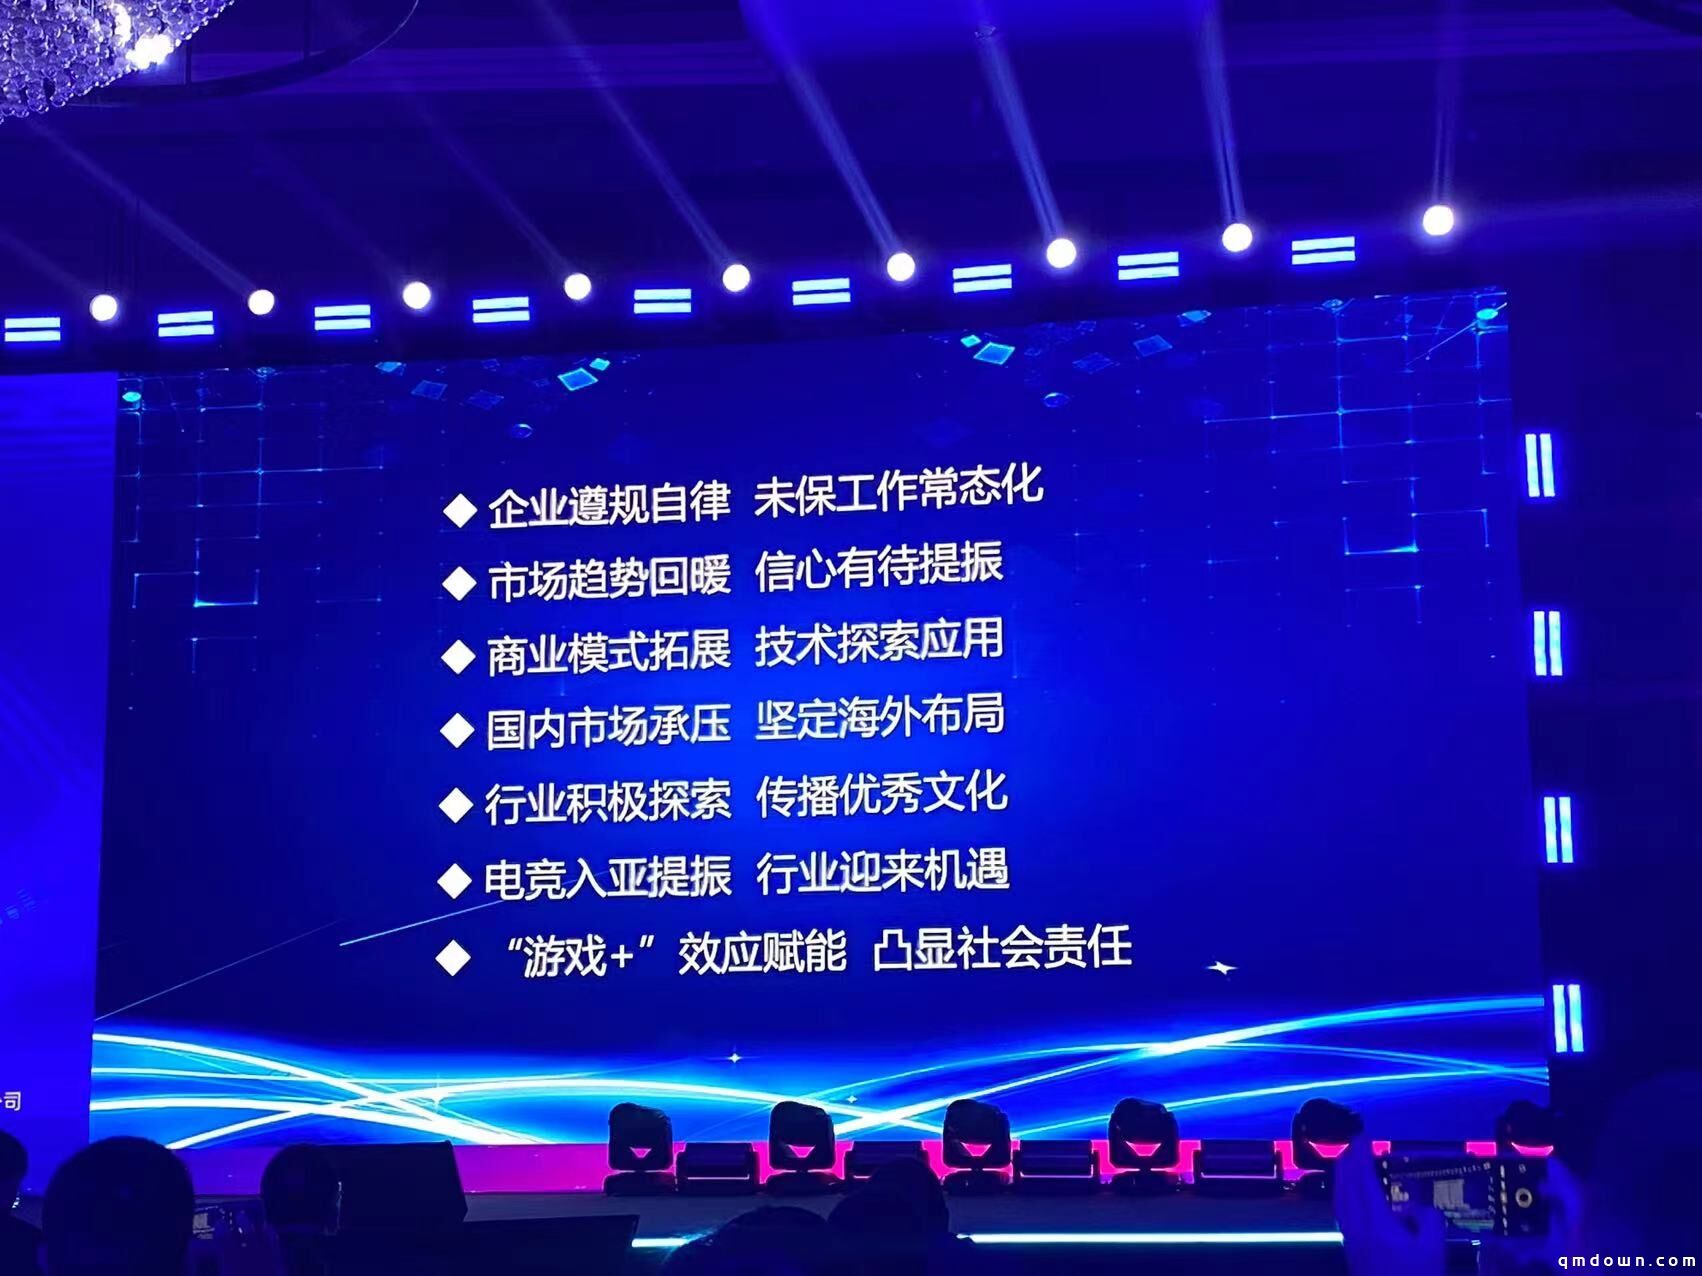 《2023年中国游戏产业报告》正式发布